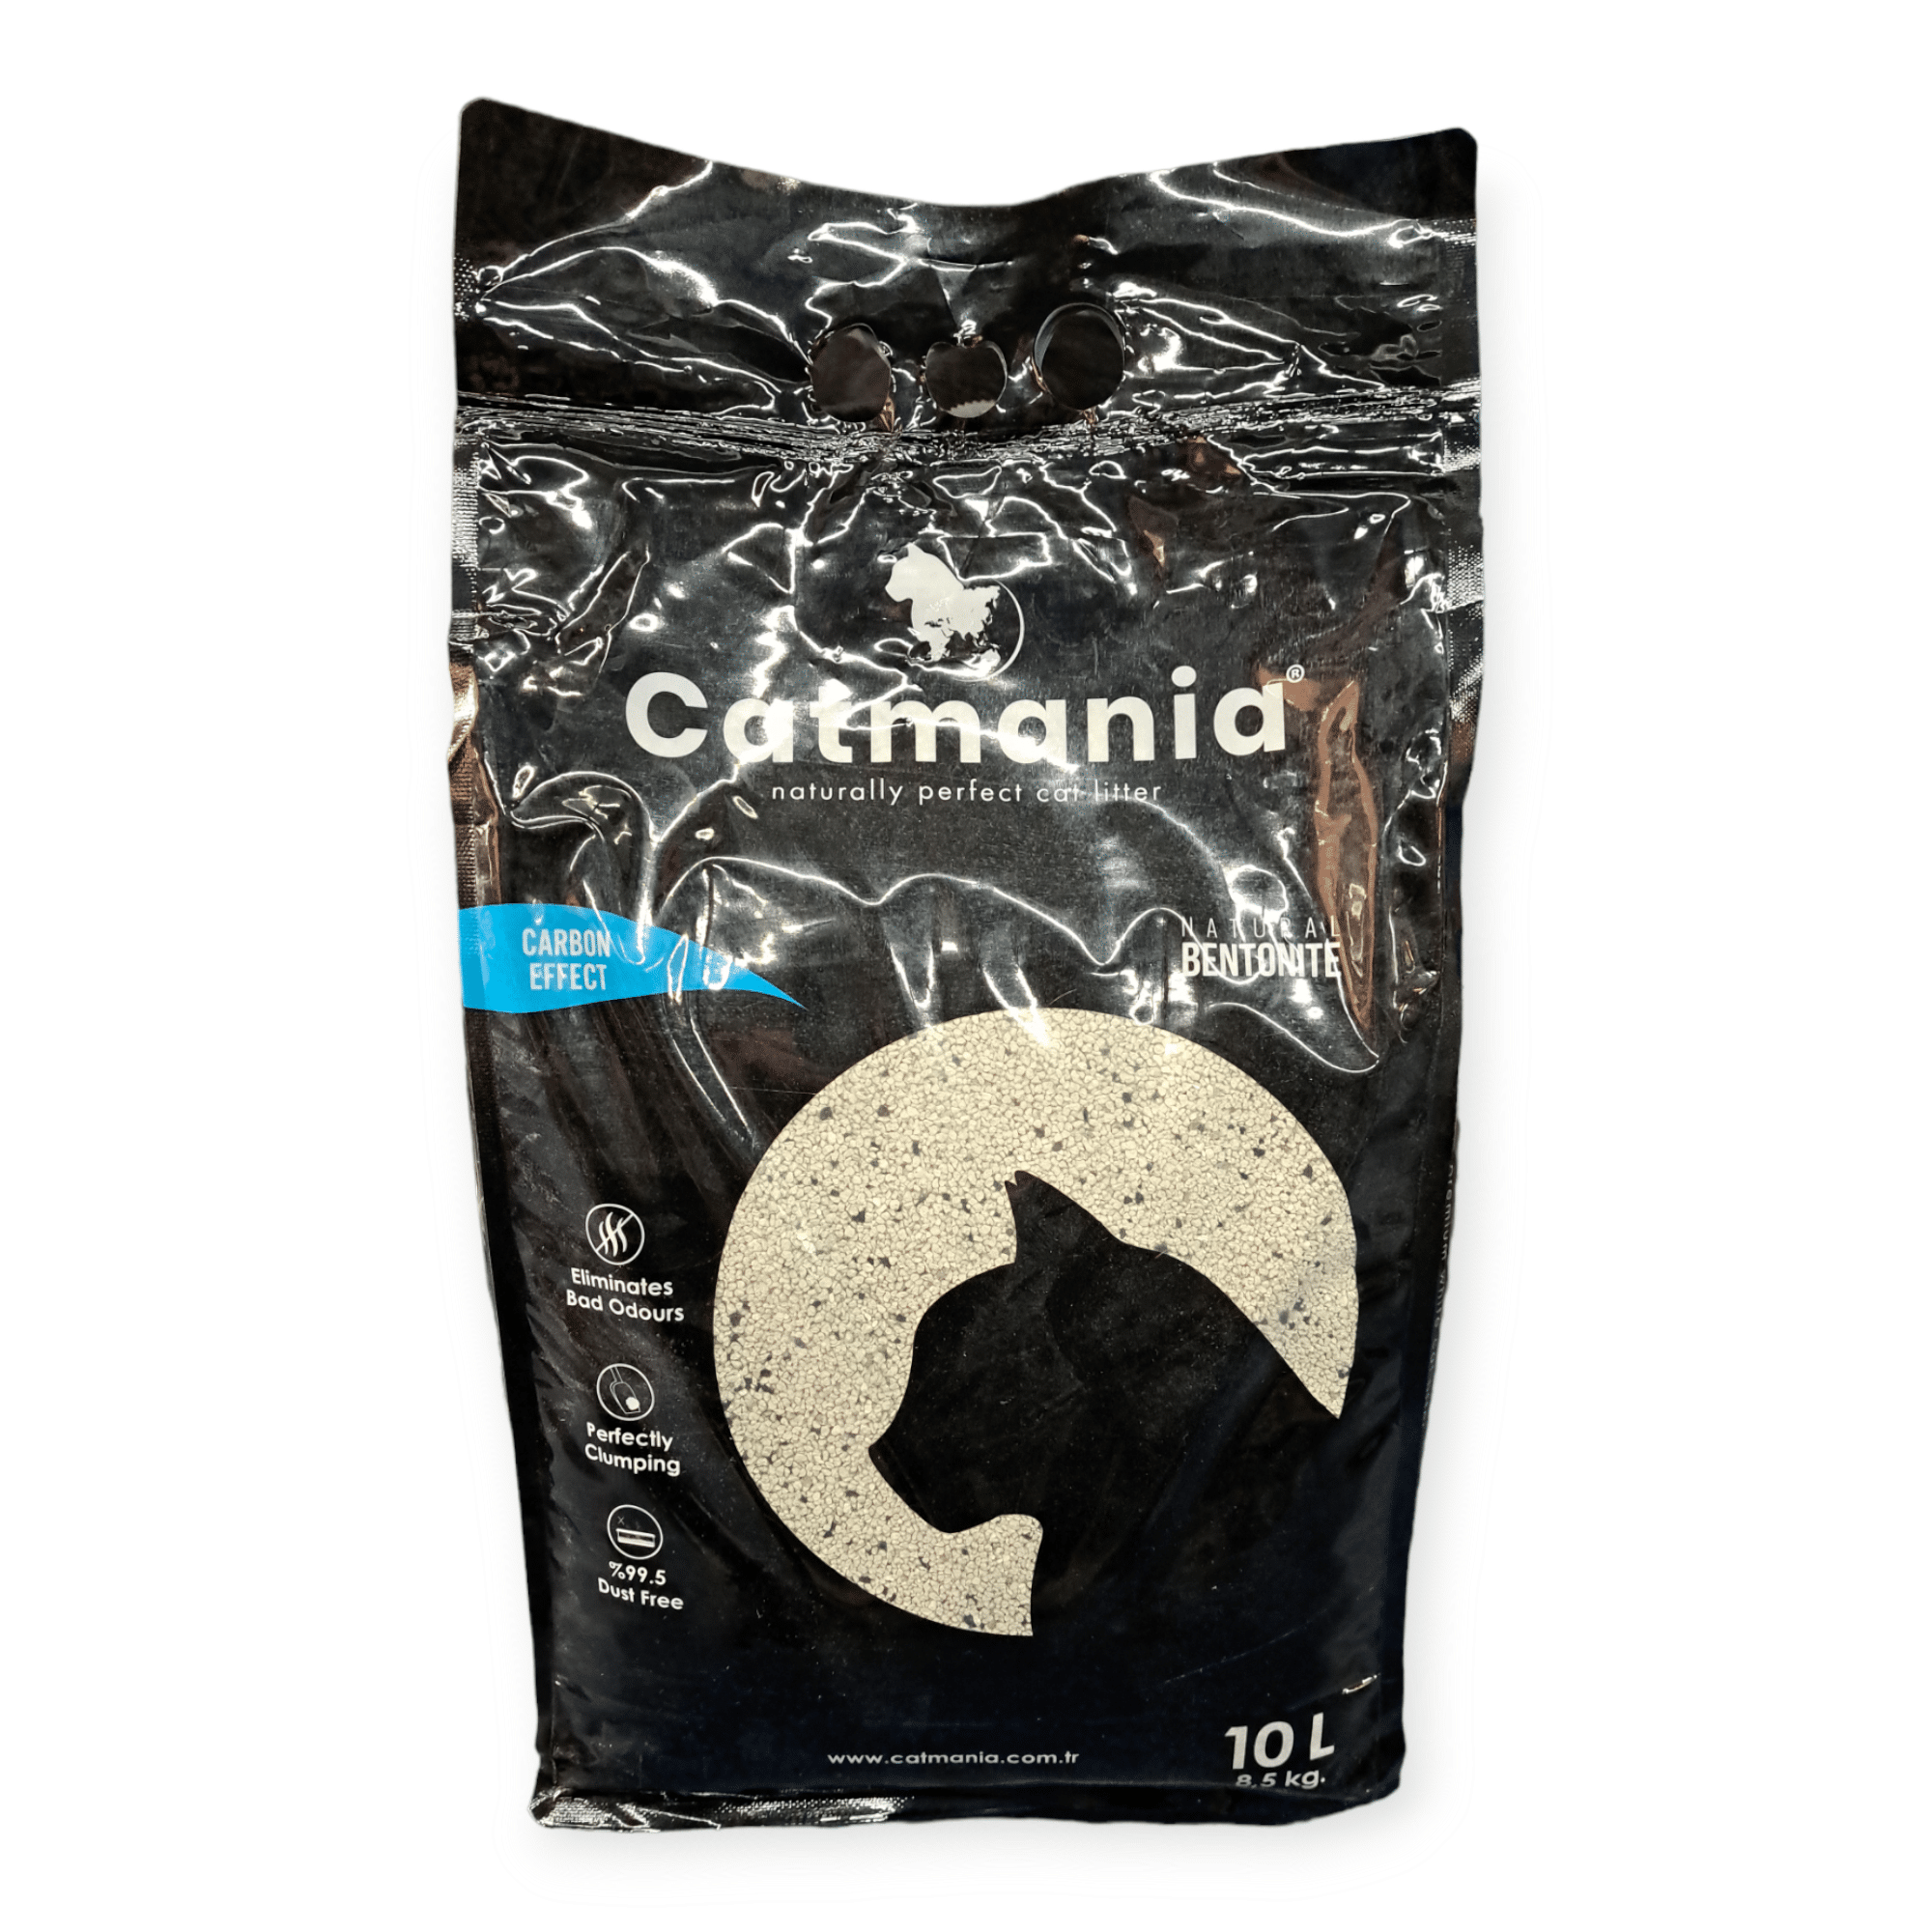 חול קטמניה , פחם , 8.5 קילו לחתולים